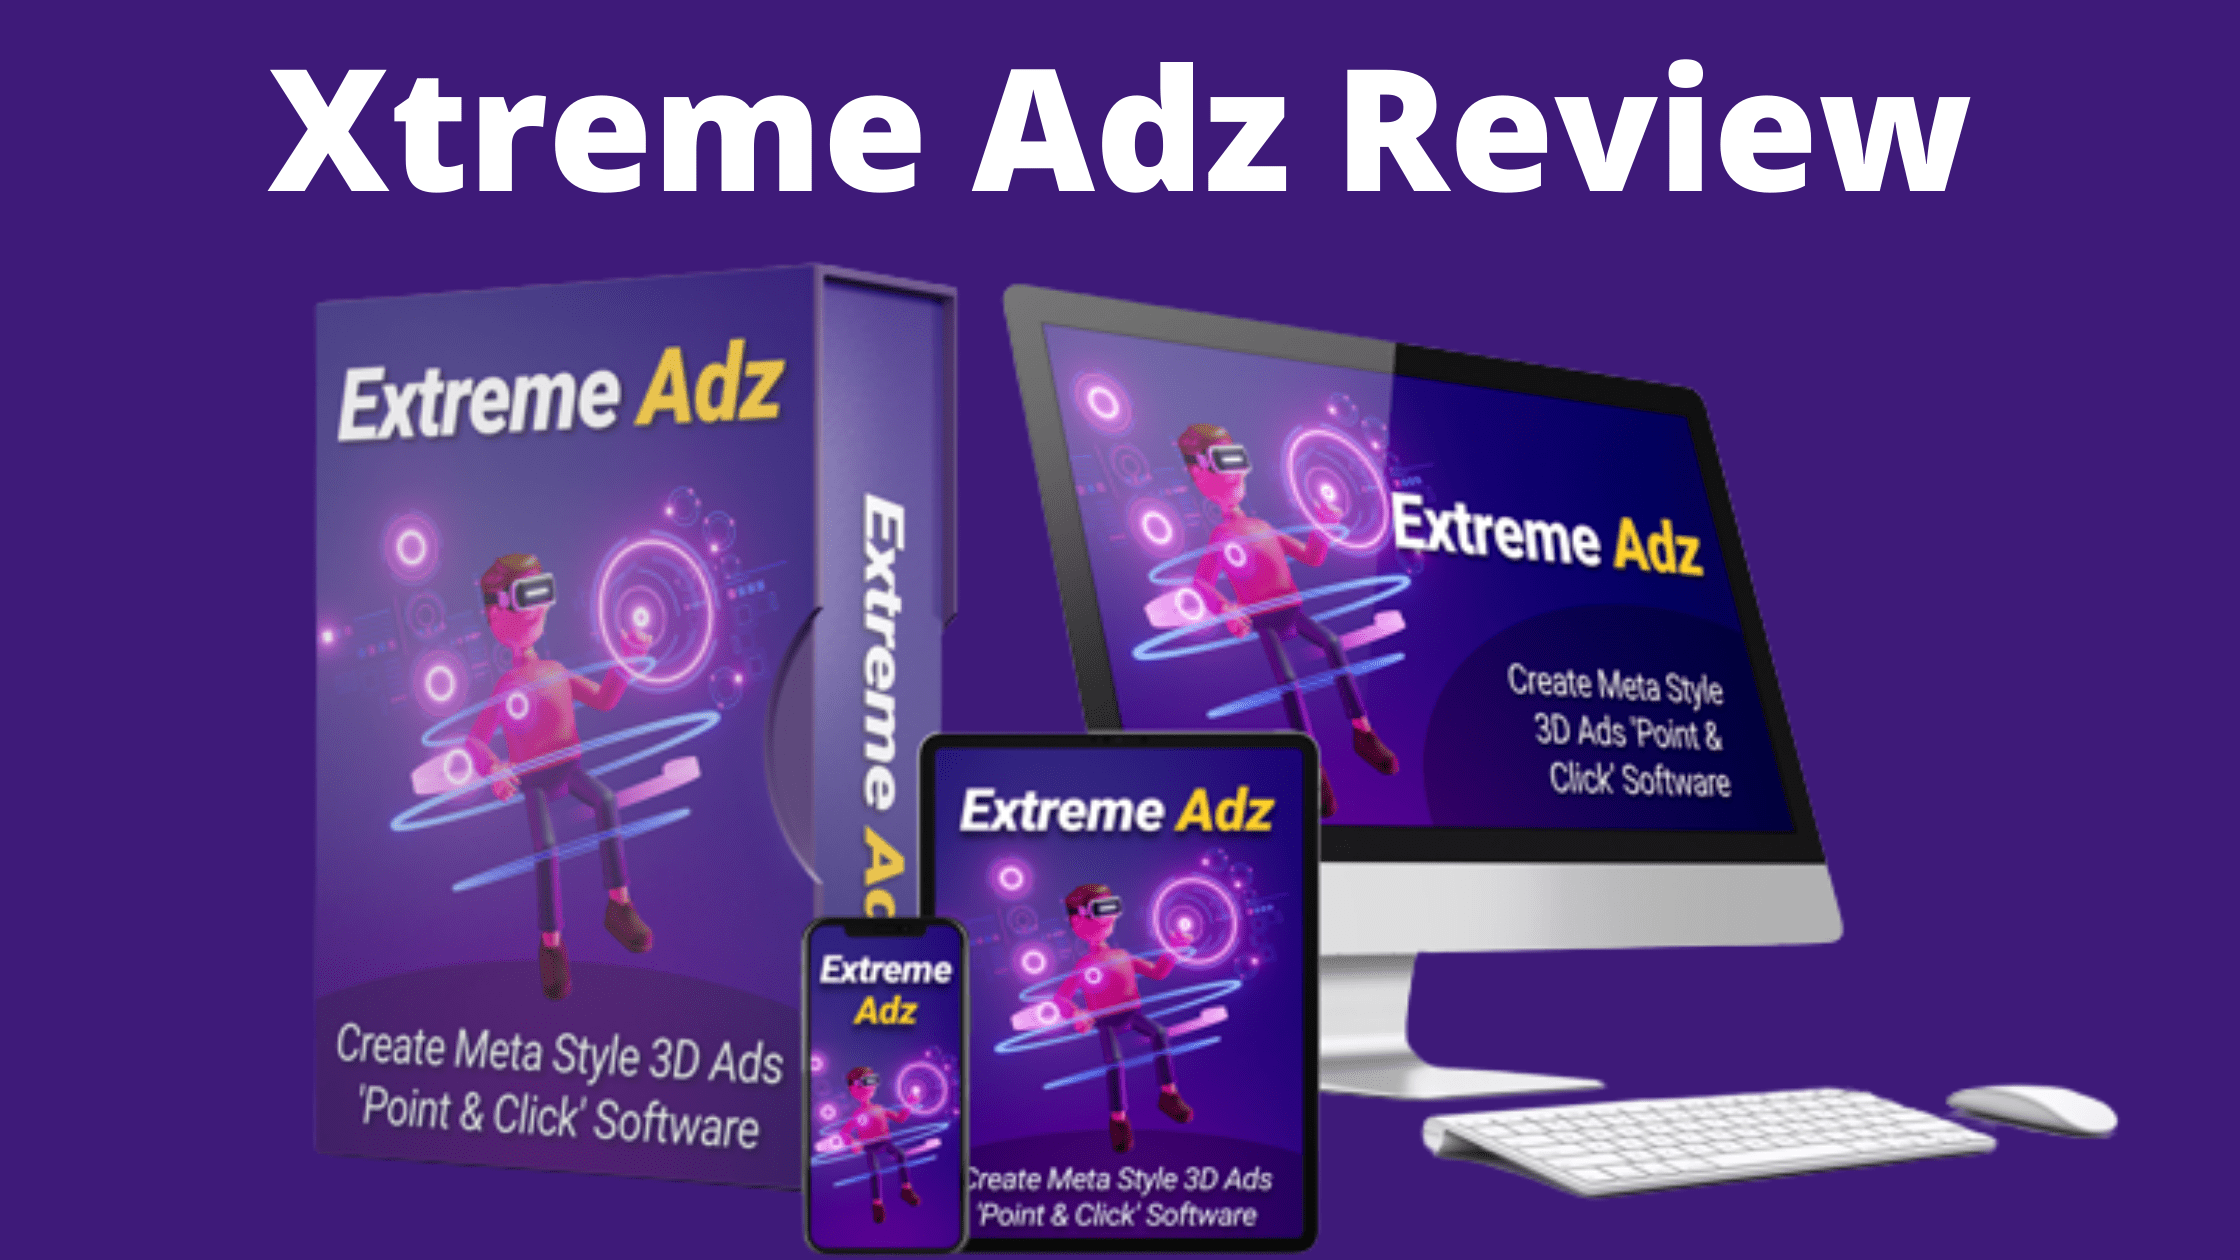 Xtreme Adz Review